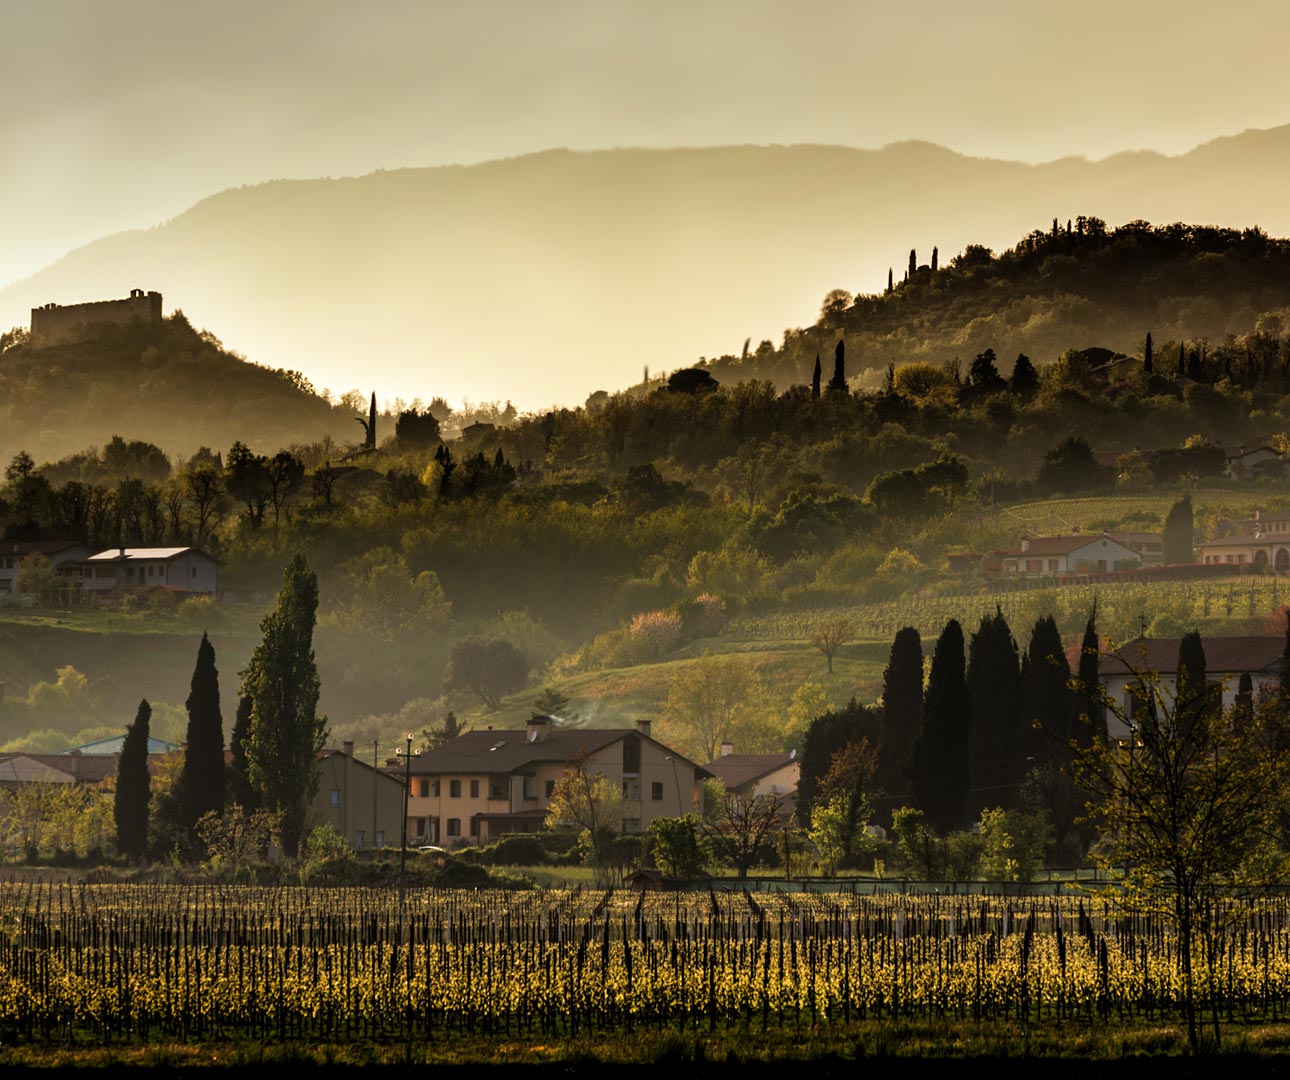 Sunset over vineyards in the Veneto